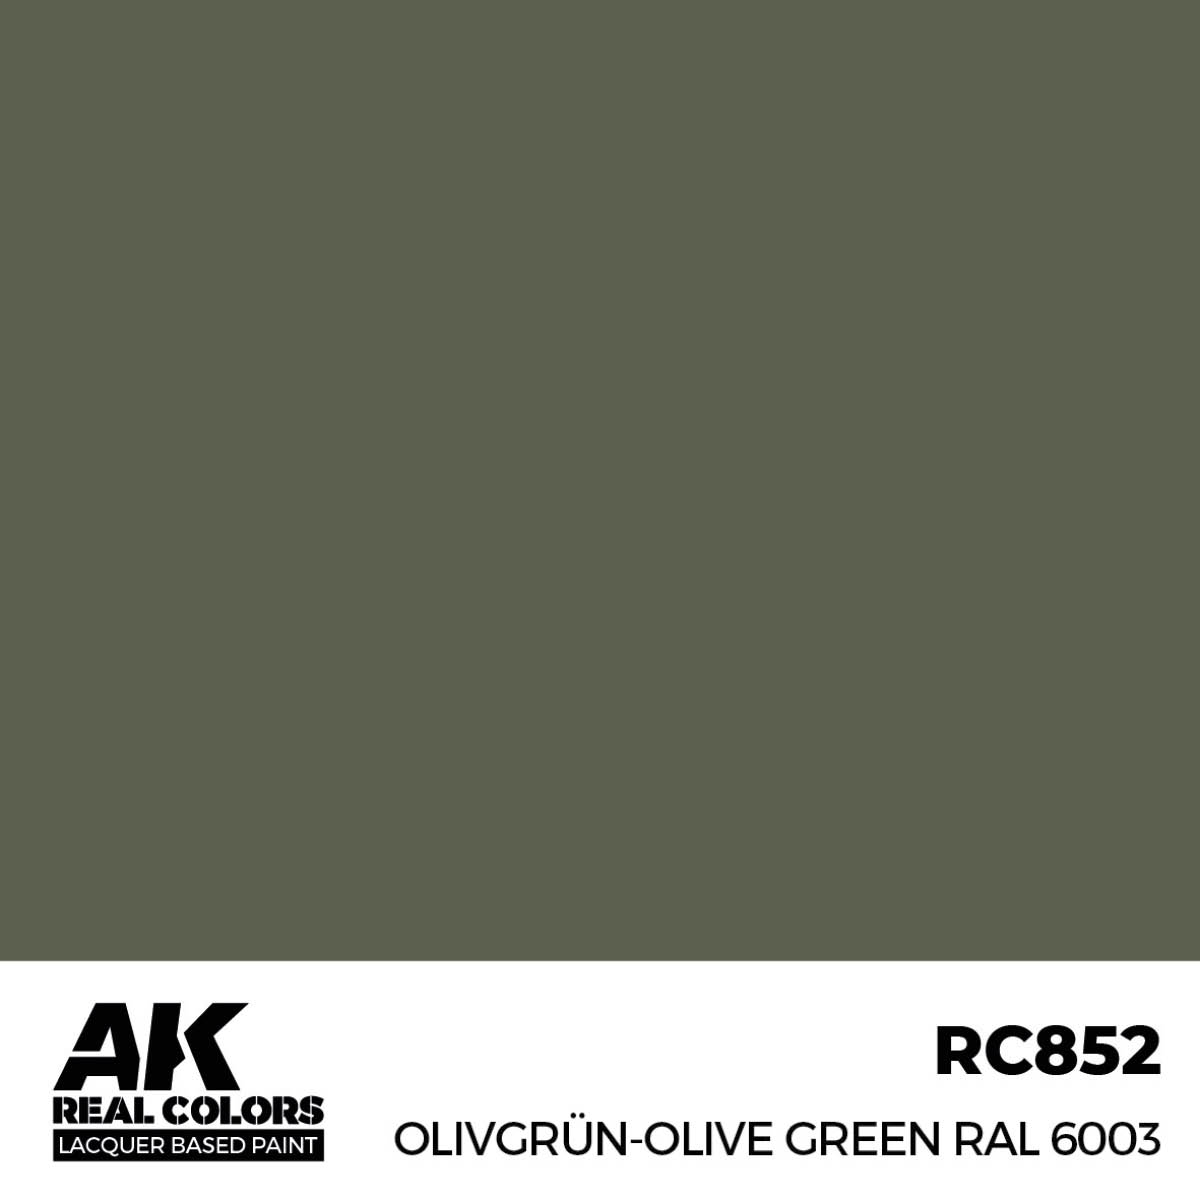 Olivgrün-Olive Green RAL 6003